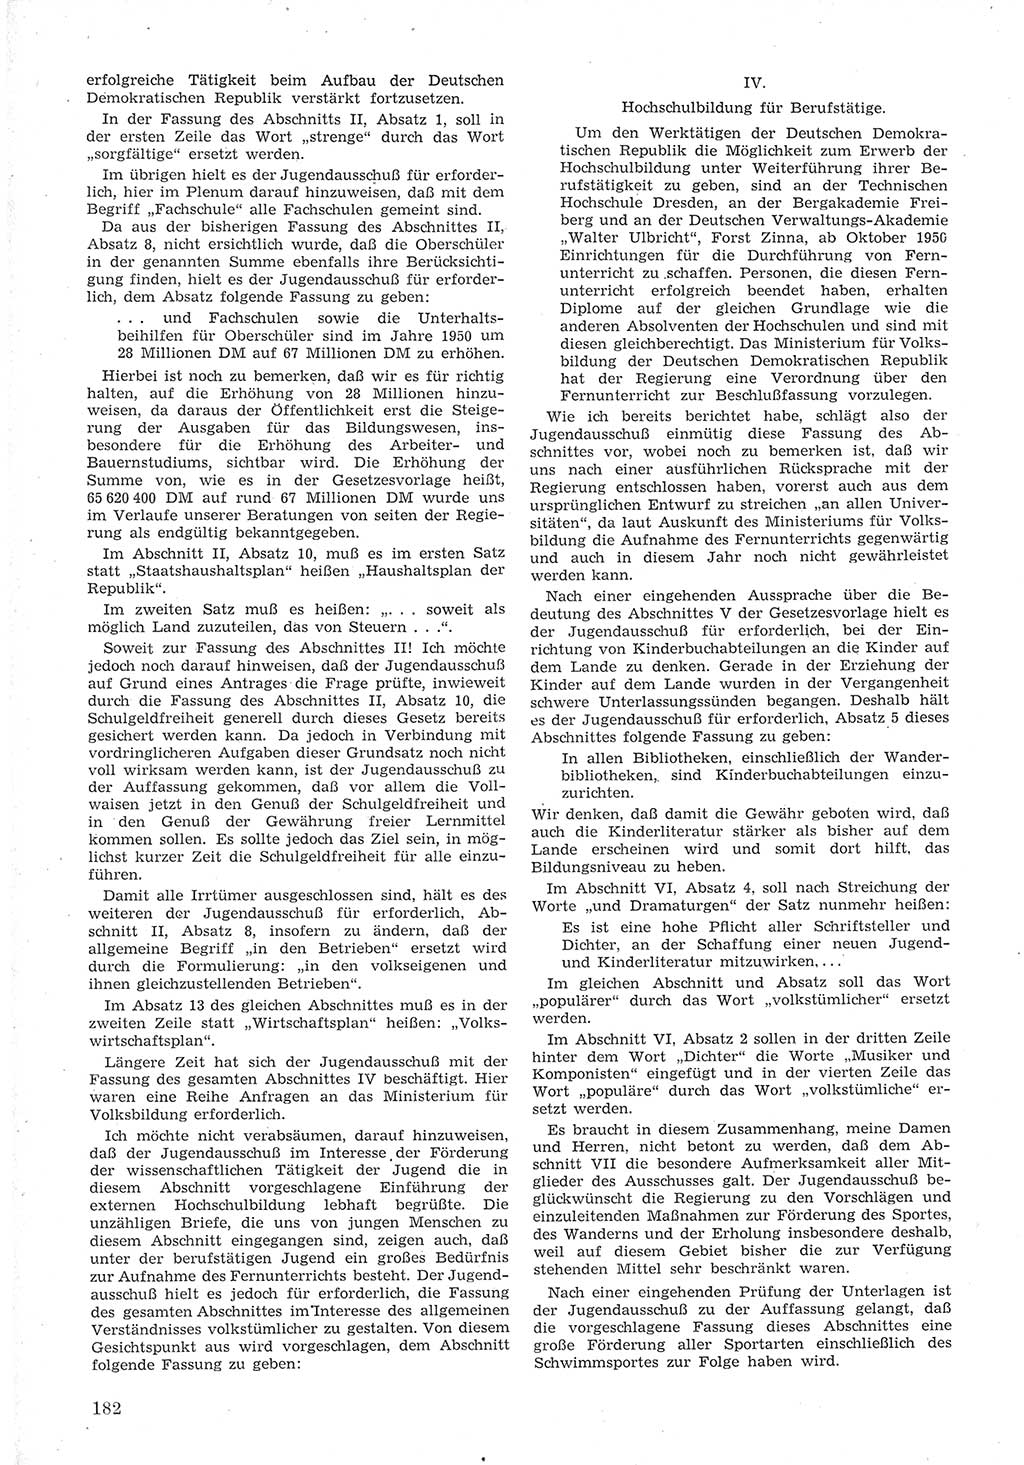 Provisorische Volkskammer (VK) der Deutschen Demokratischen Republik (DDR) 1949-1950, Dokument 194 (Prov. VK DDR 1949-1950, Dok. 194)